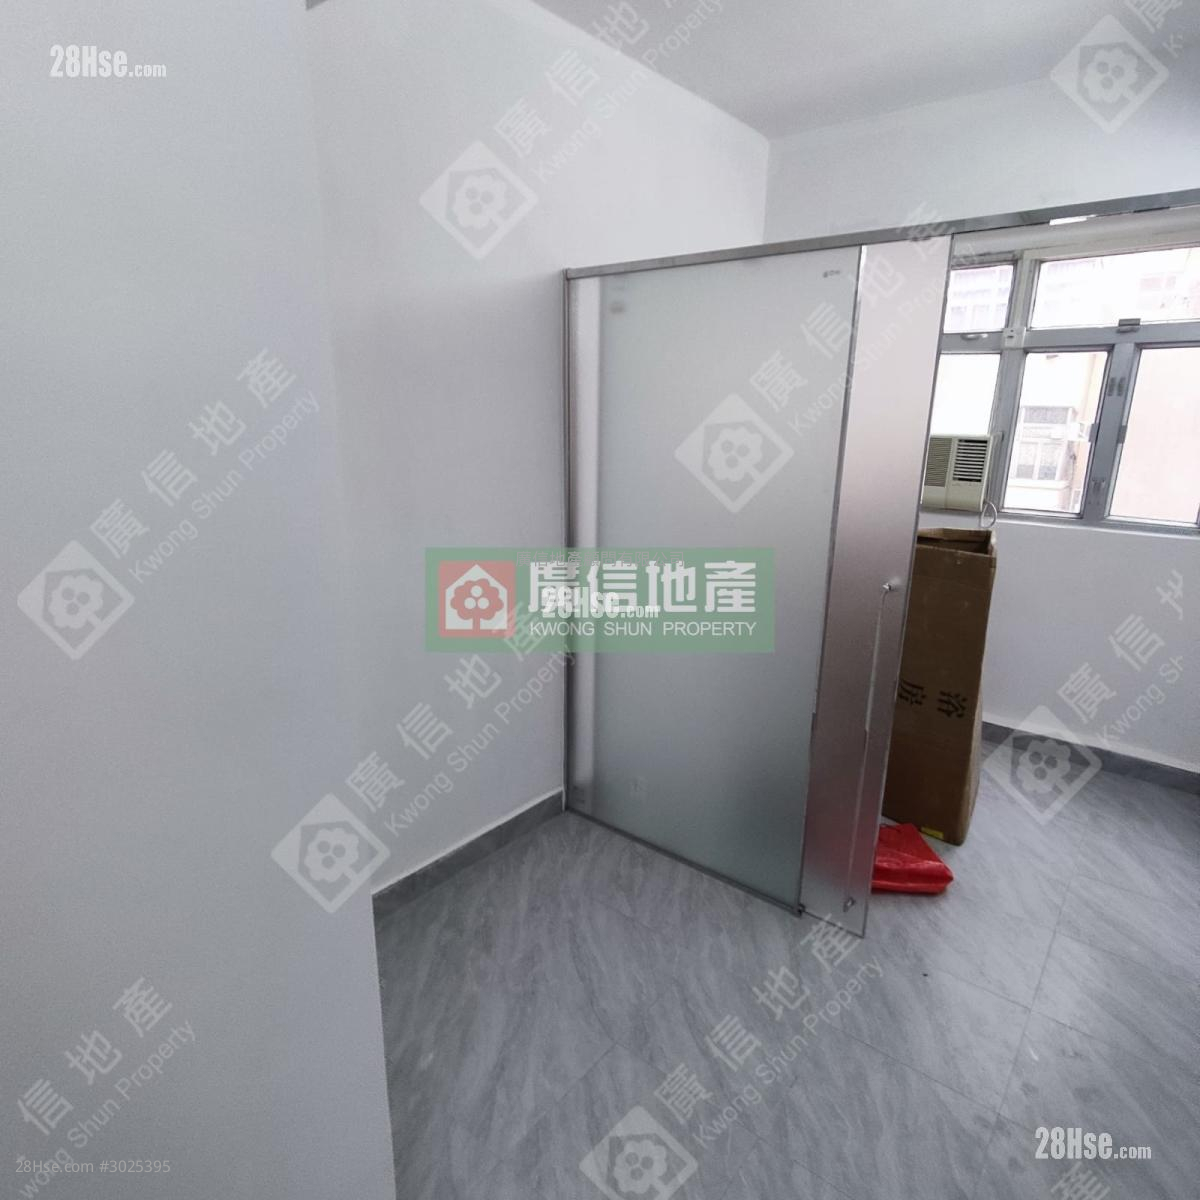 187 Shanghai Street Rental 1 bedrooms , 1 bathrooms 145 ft²